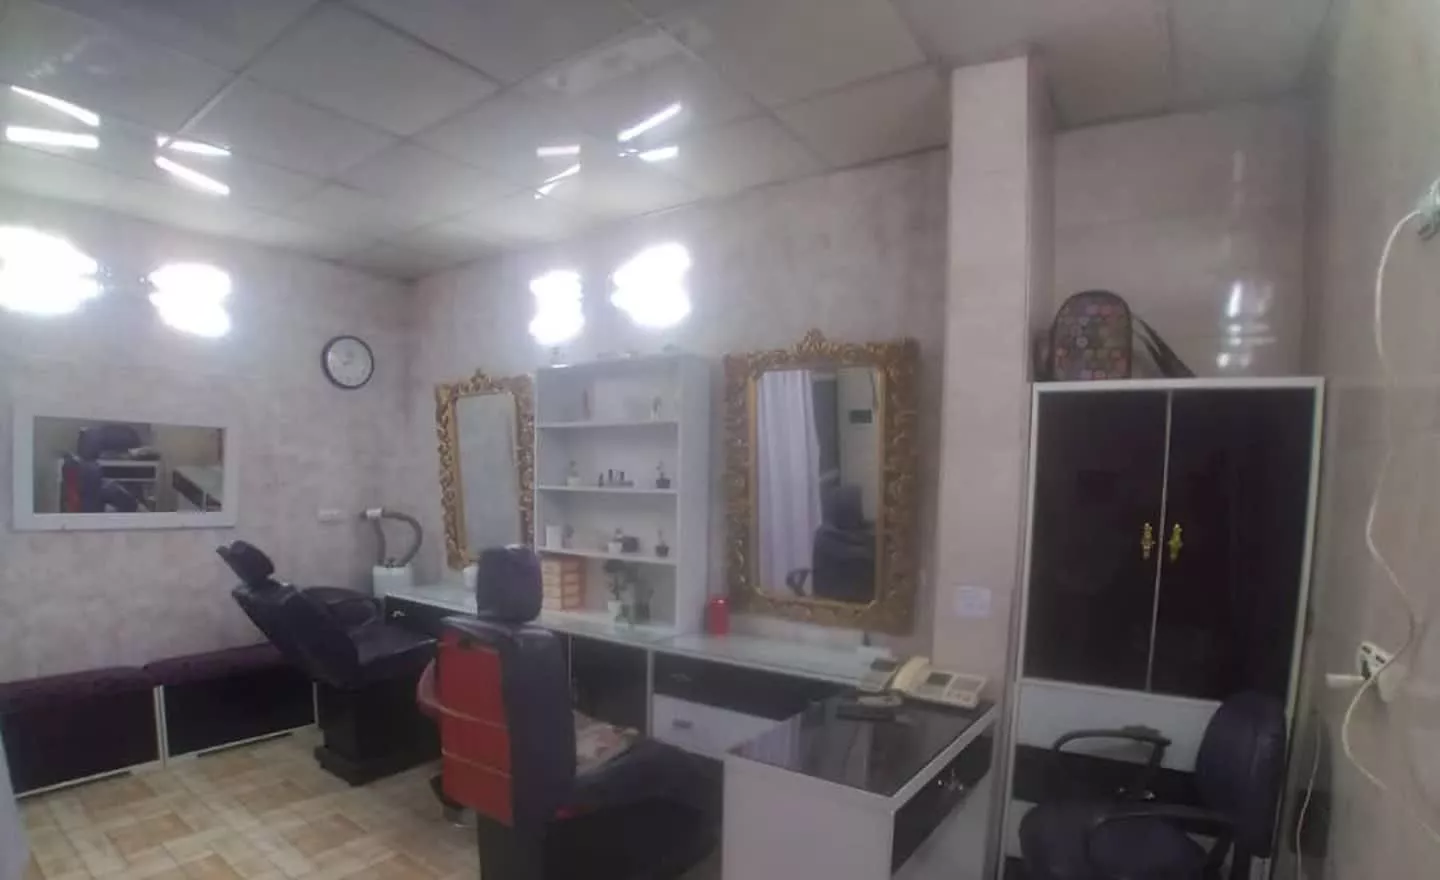 مغازه آرایشگاه زنانه